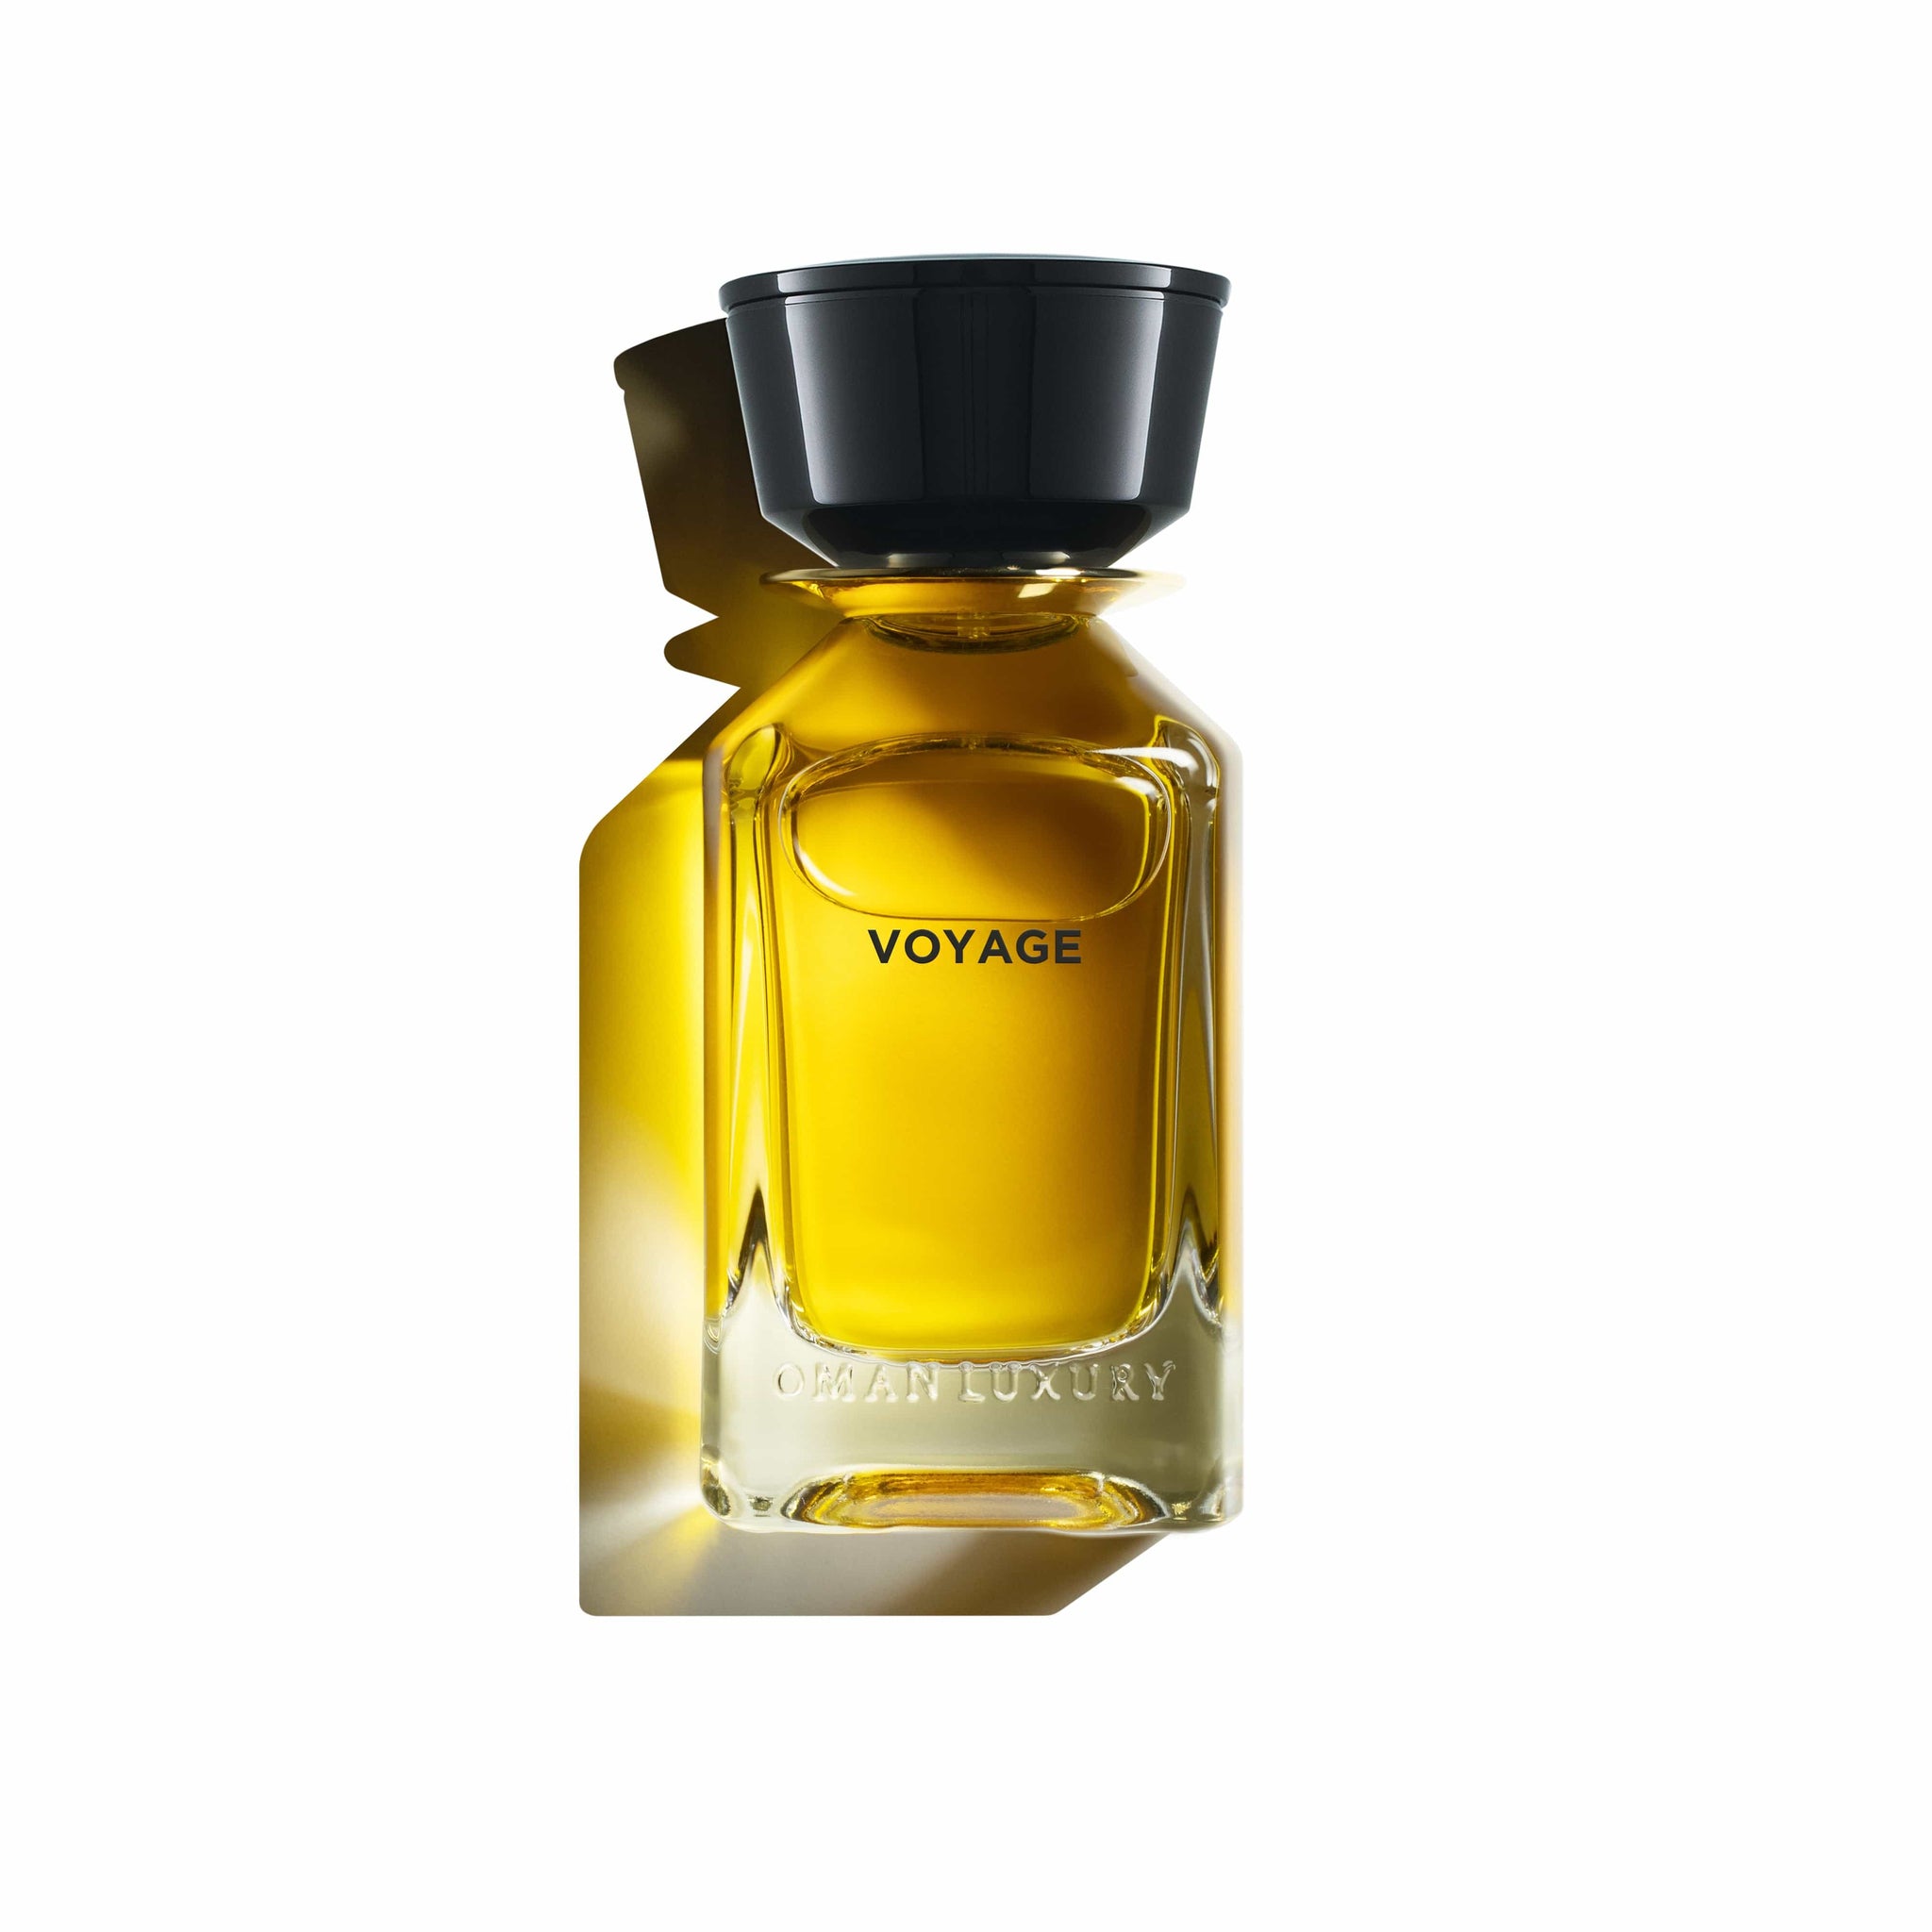 Voyage de Oman Luxury Eau de Parfum